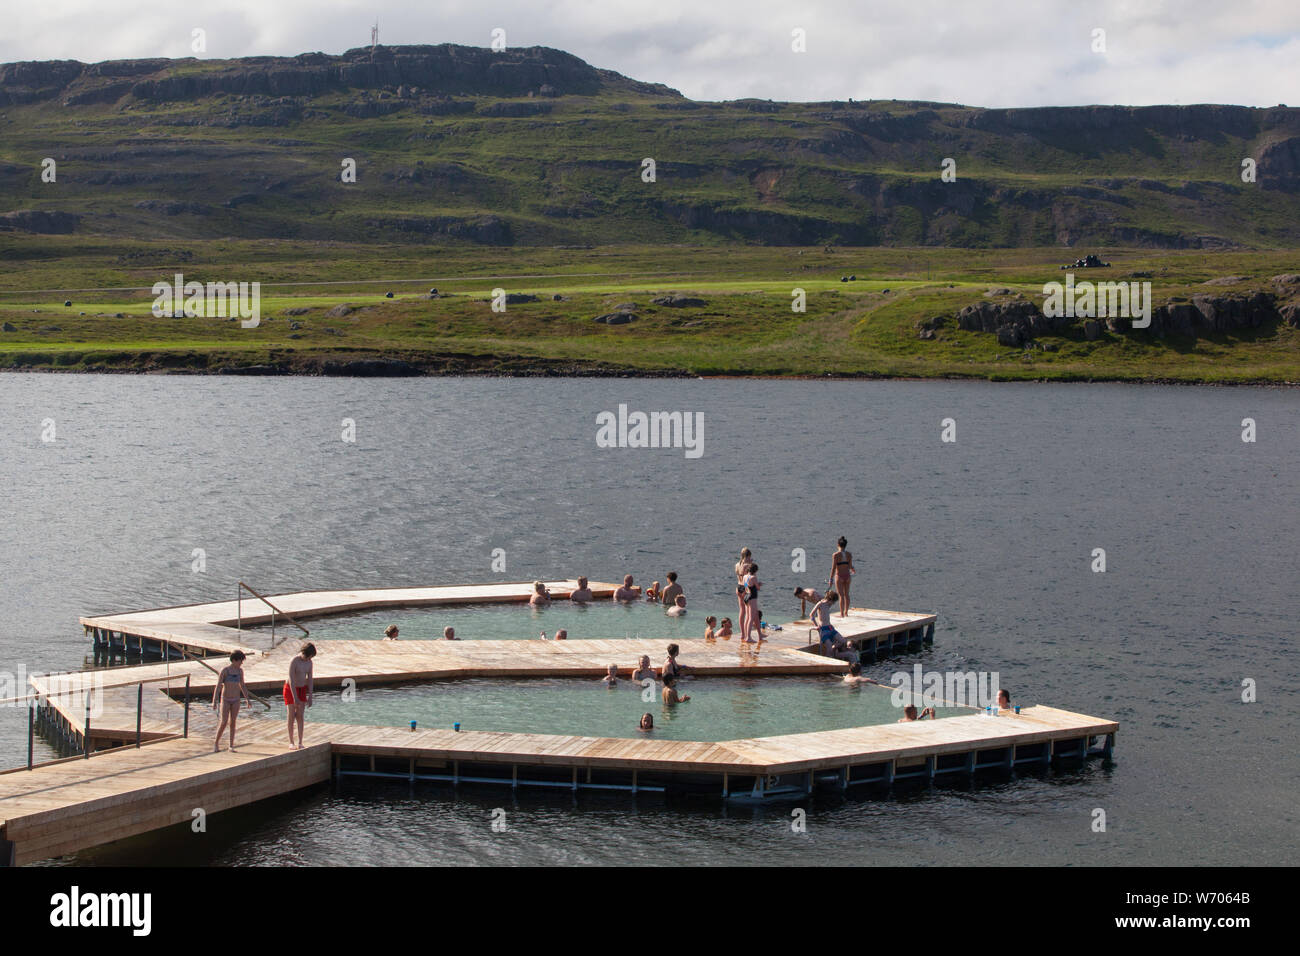 Vök Baths, un nouveau développement de l'énergie géothermique en Islande, des bains a ouvert 27 juillet 2019 sur les rives du lac de Urriðavatn, près de la ville d'Egilsstaðir à l'Est de l'Islande. Cette région n'a pas d'autre thermes géothermique pour la création d'Vök sur le site des bains de sources chaudes naturelles dans le lac sera une nouvelle attraction touristique pour la région. Les piscines et les allées en bois flottent dans le lac et avoir de l'eau de 38 à 41 Celsius. Le bâtiment abritant les vestiaires, douches et un café a un traditionnel et respectueux de l'toit de gazon. L'architecture est par les architectes de basalte de Reykjavík. L Banque D'Images